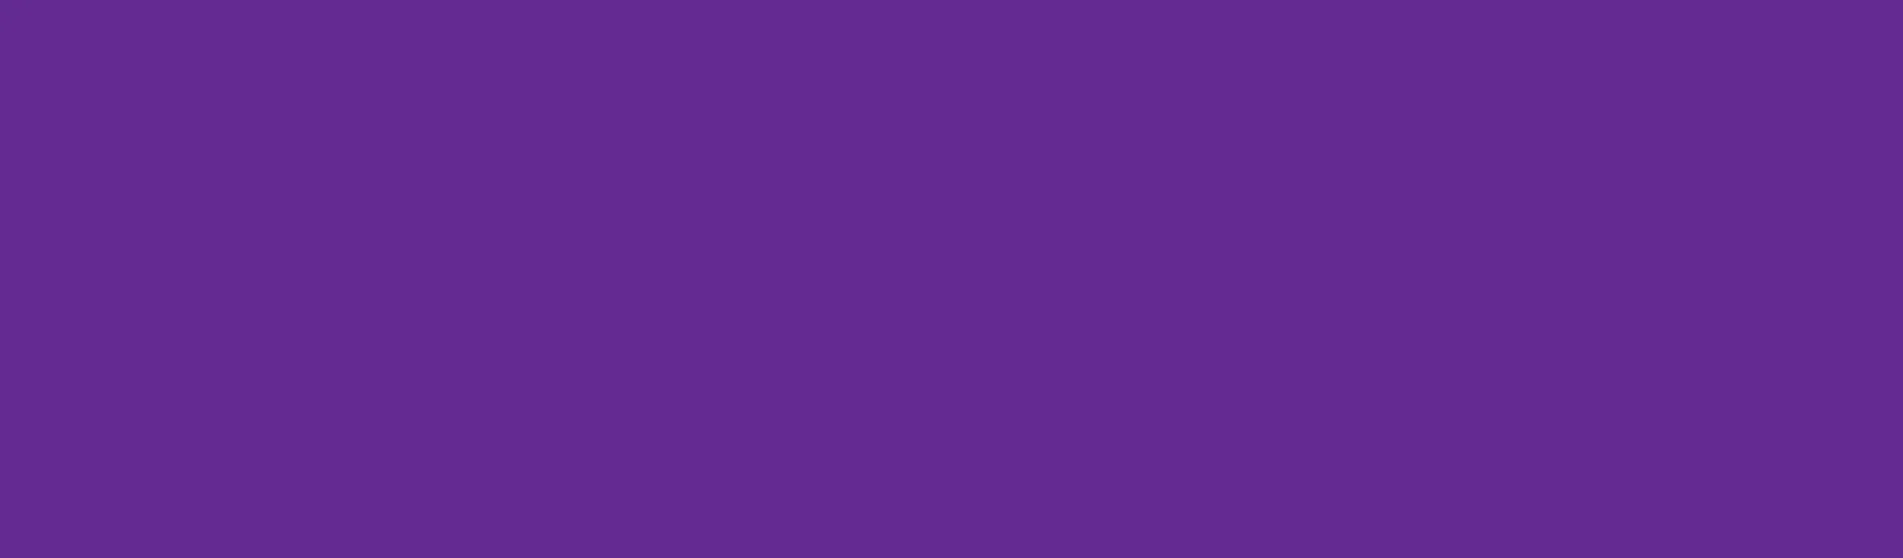 Purpleblock_1903x558